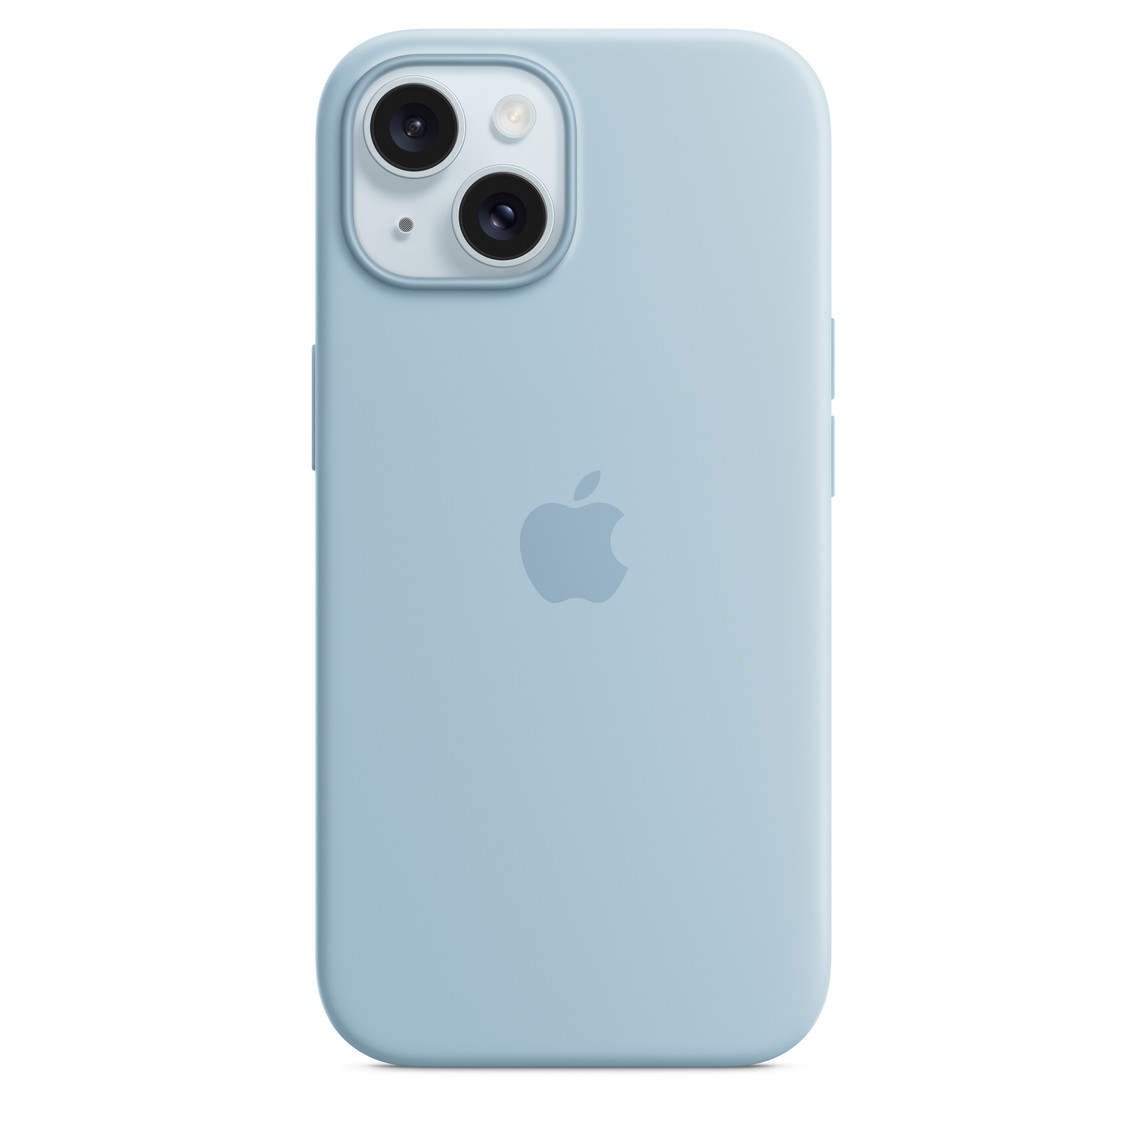 Capa de silicone azul-clara com MagSafe para iPhone 15, com logotipo da Apple gravado no centro, encaixada no iPhone 15 azul, com recorte para câmera.